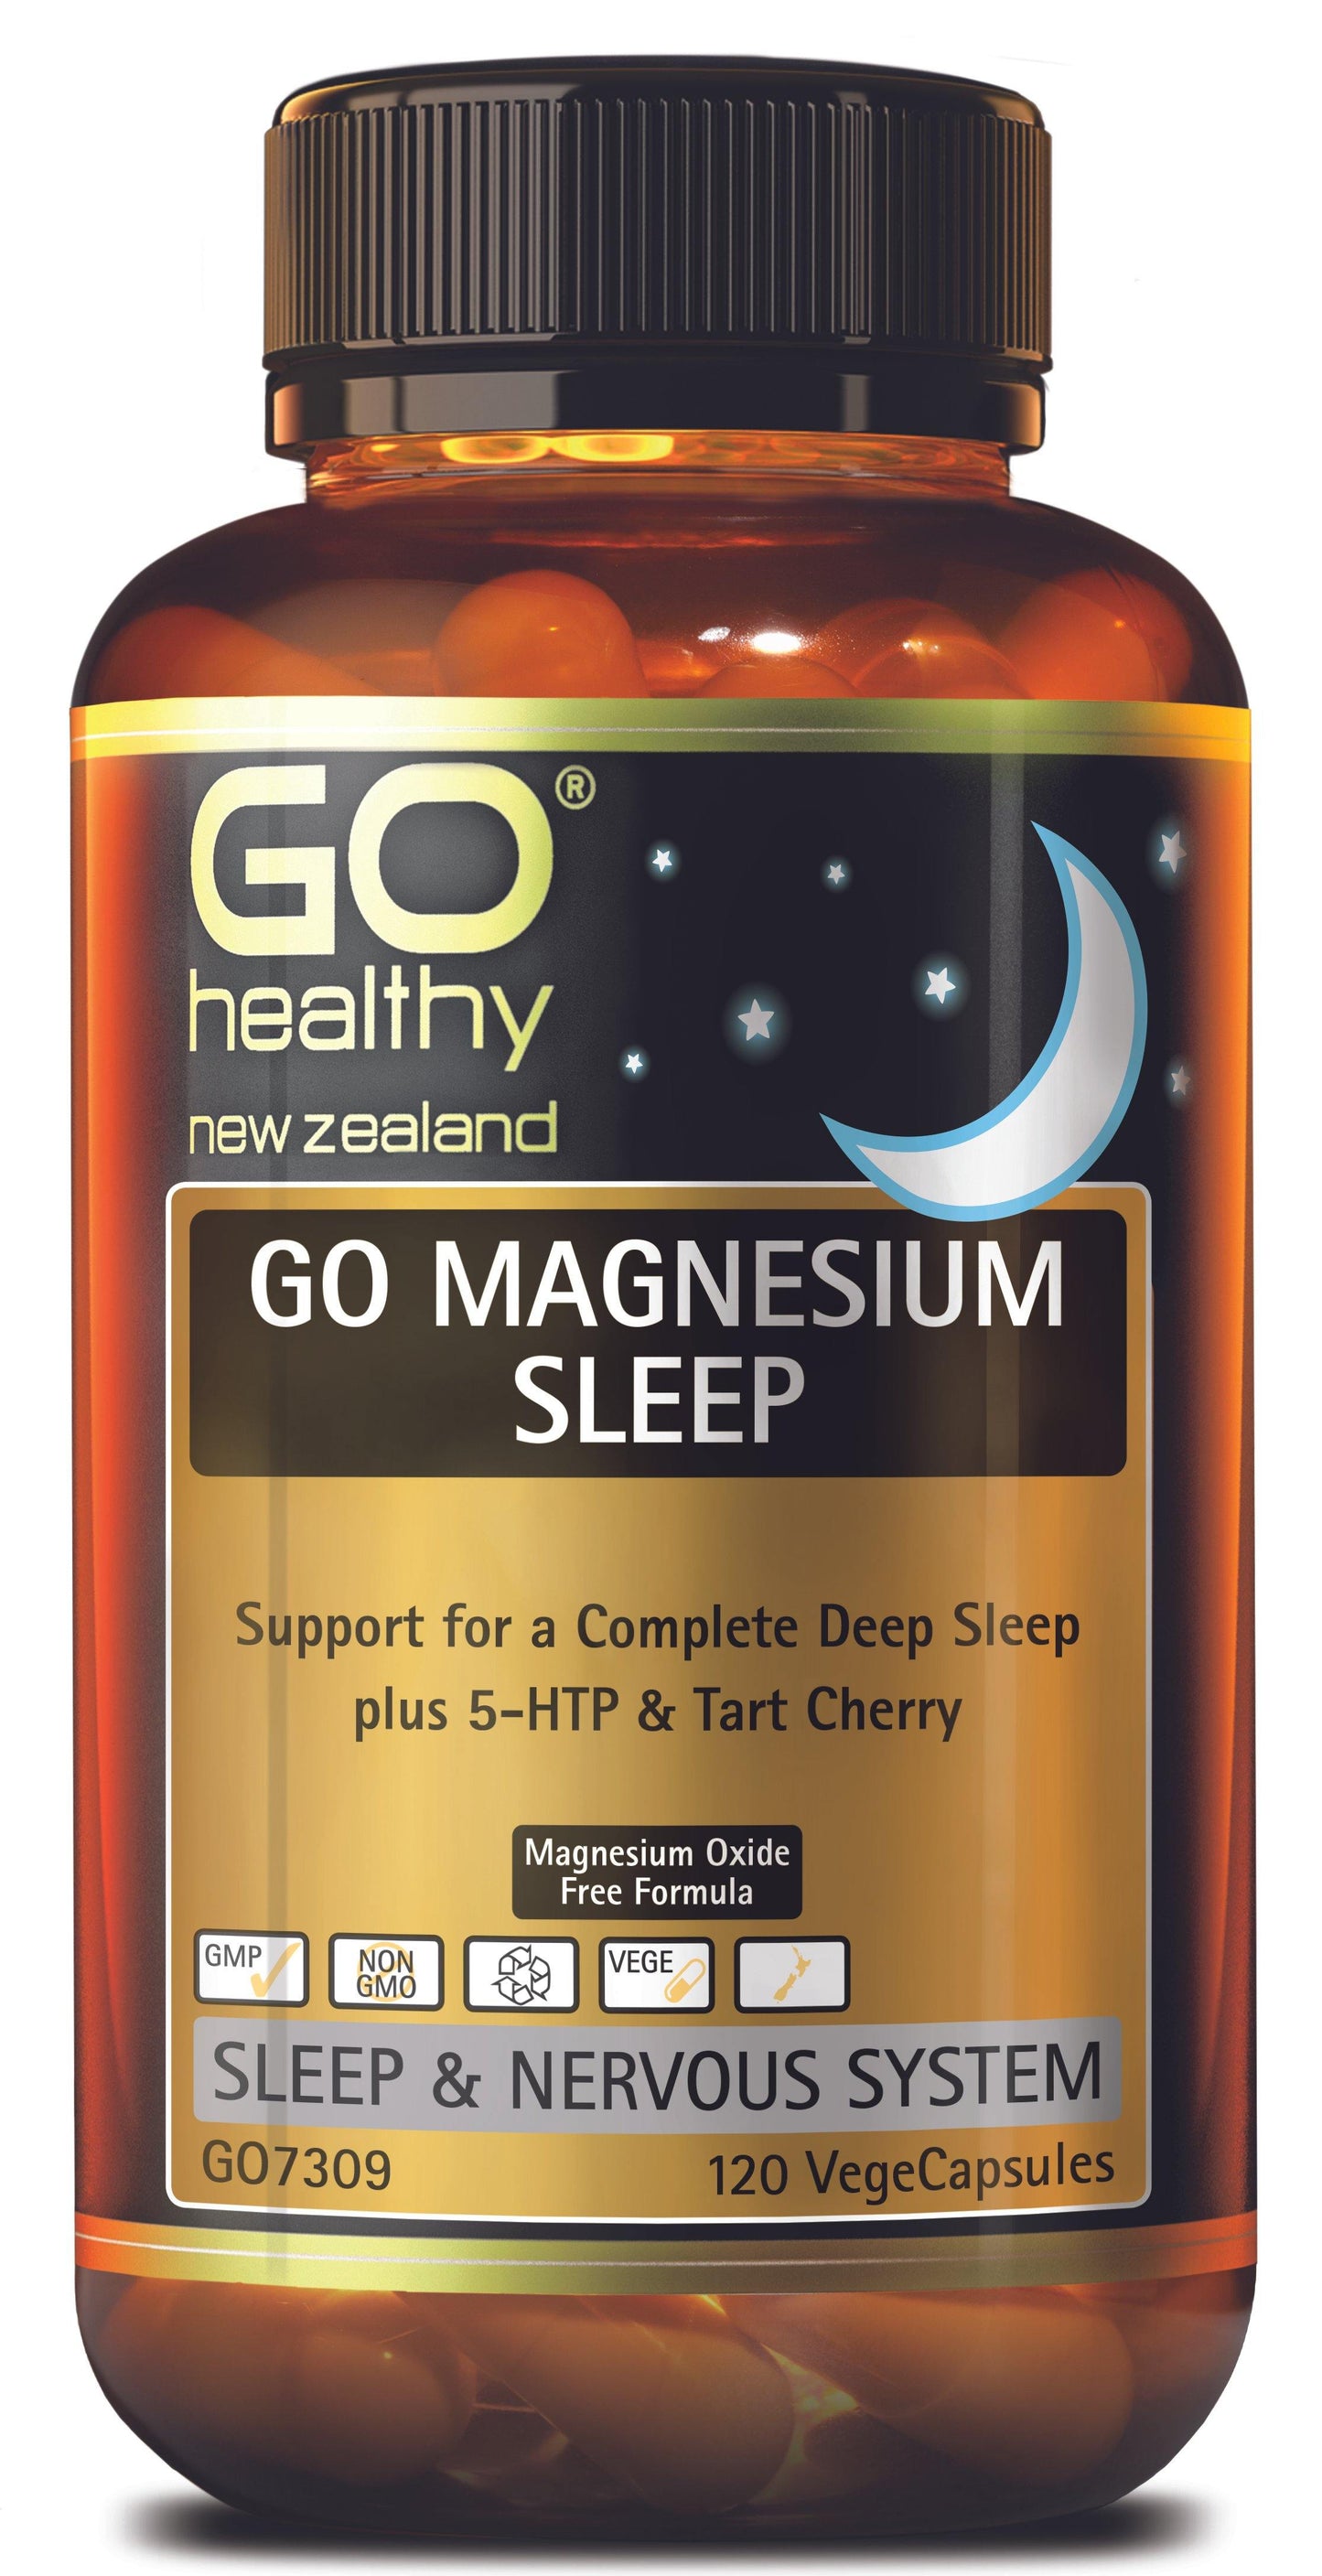 GO HEALTHY Magnesium Sleep capsules